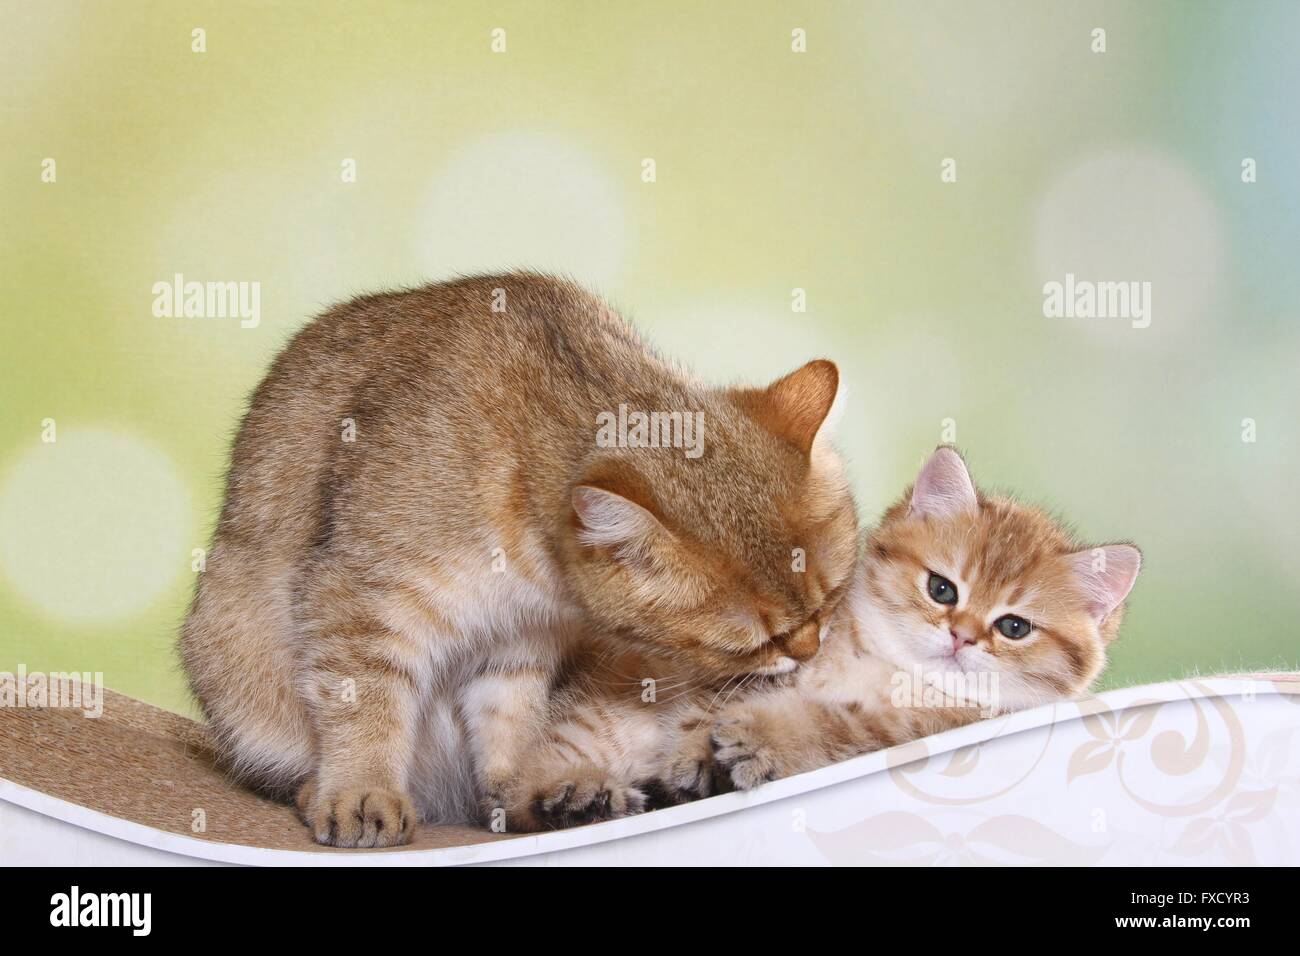 British Shorthair cat with kitten Stock Photo